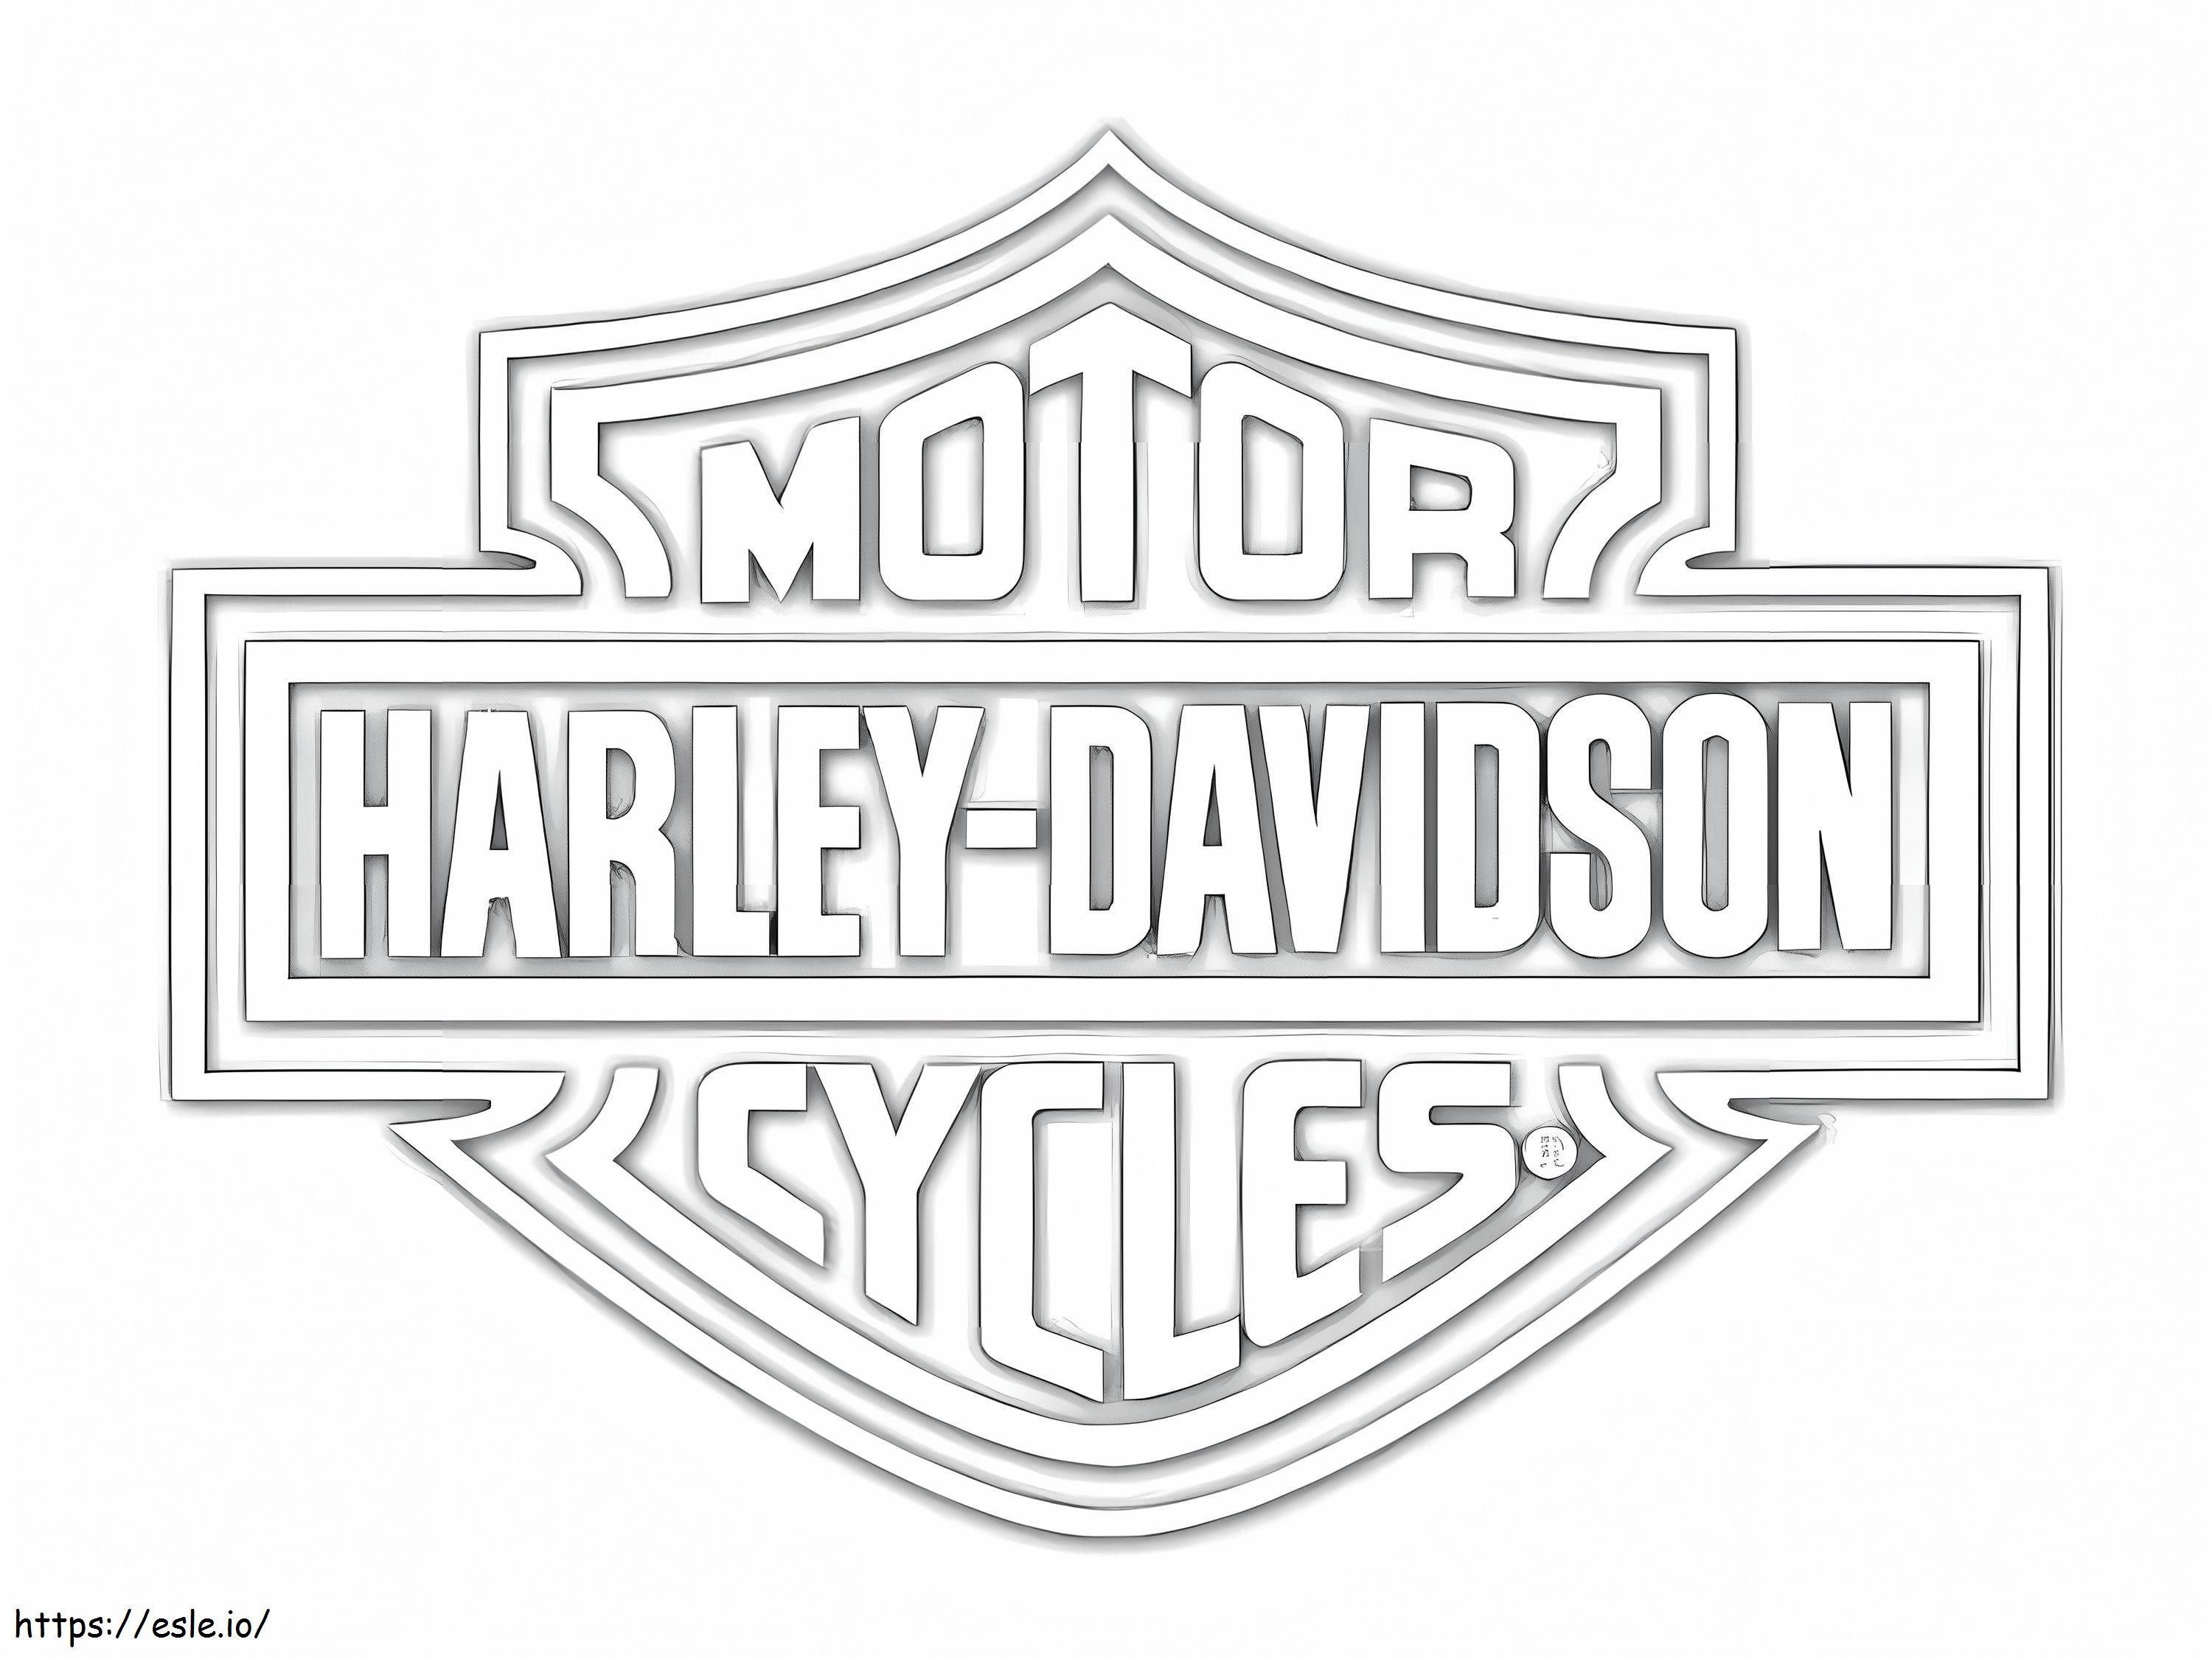 Coloriage Logo Harley-Davidson à imprimer dessin